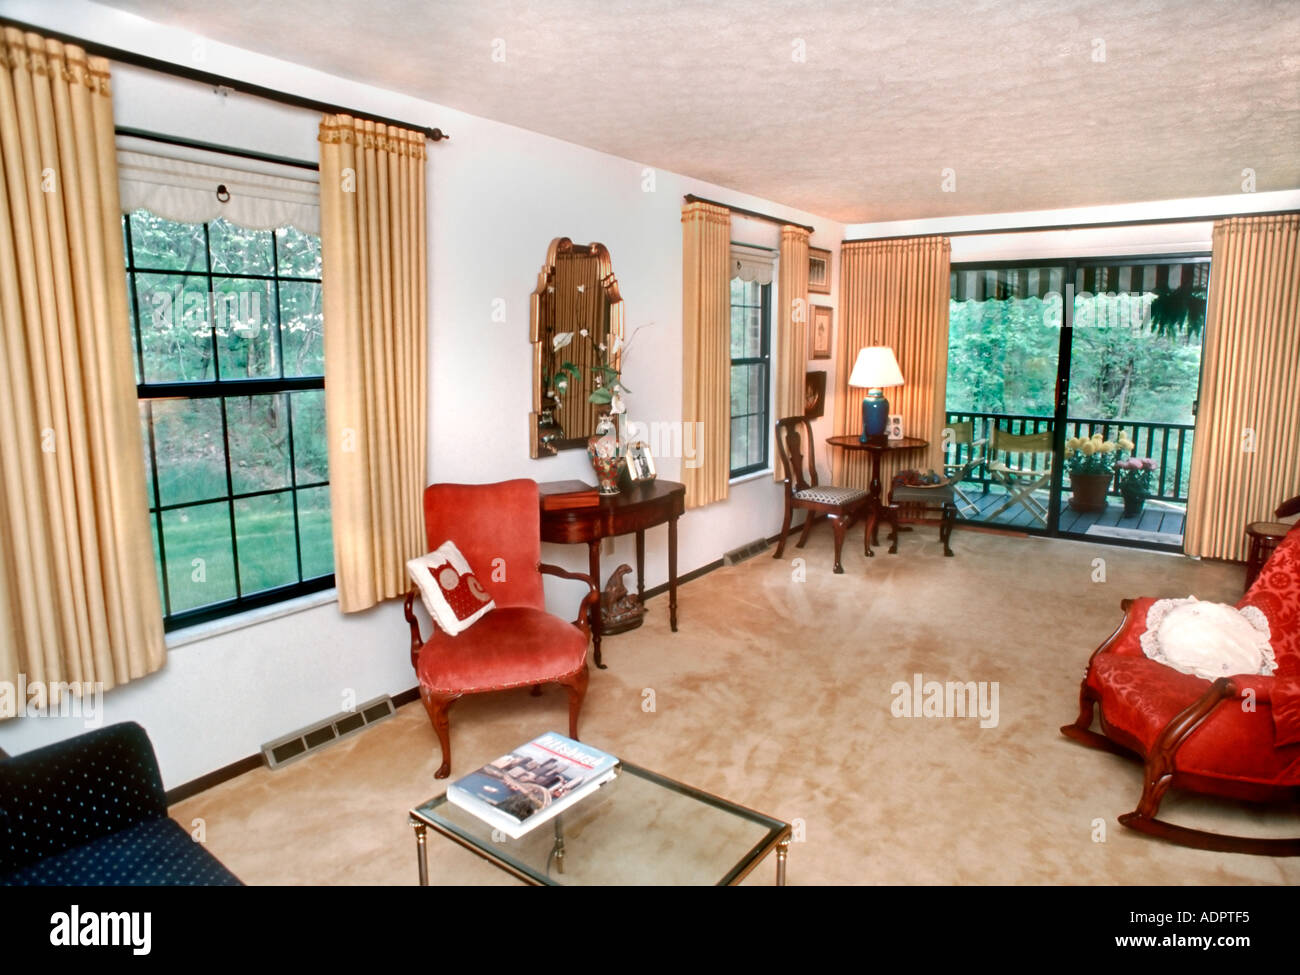 USA, vitrine intérieur moderne, plat, Condominium salon Design intérieur, style contemporain Maison, 1980s, Windows Banque D'Images